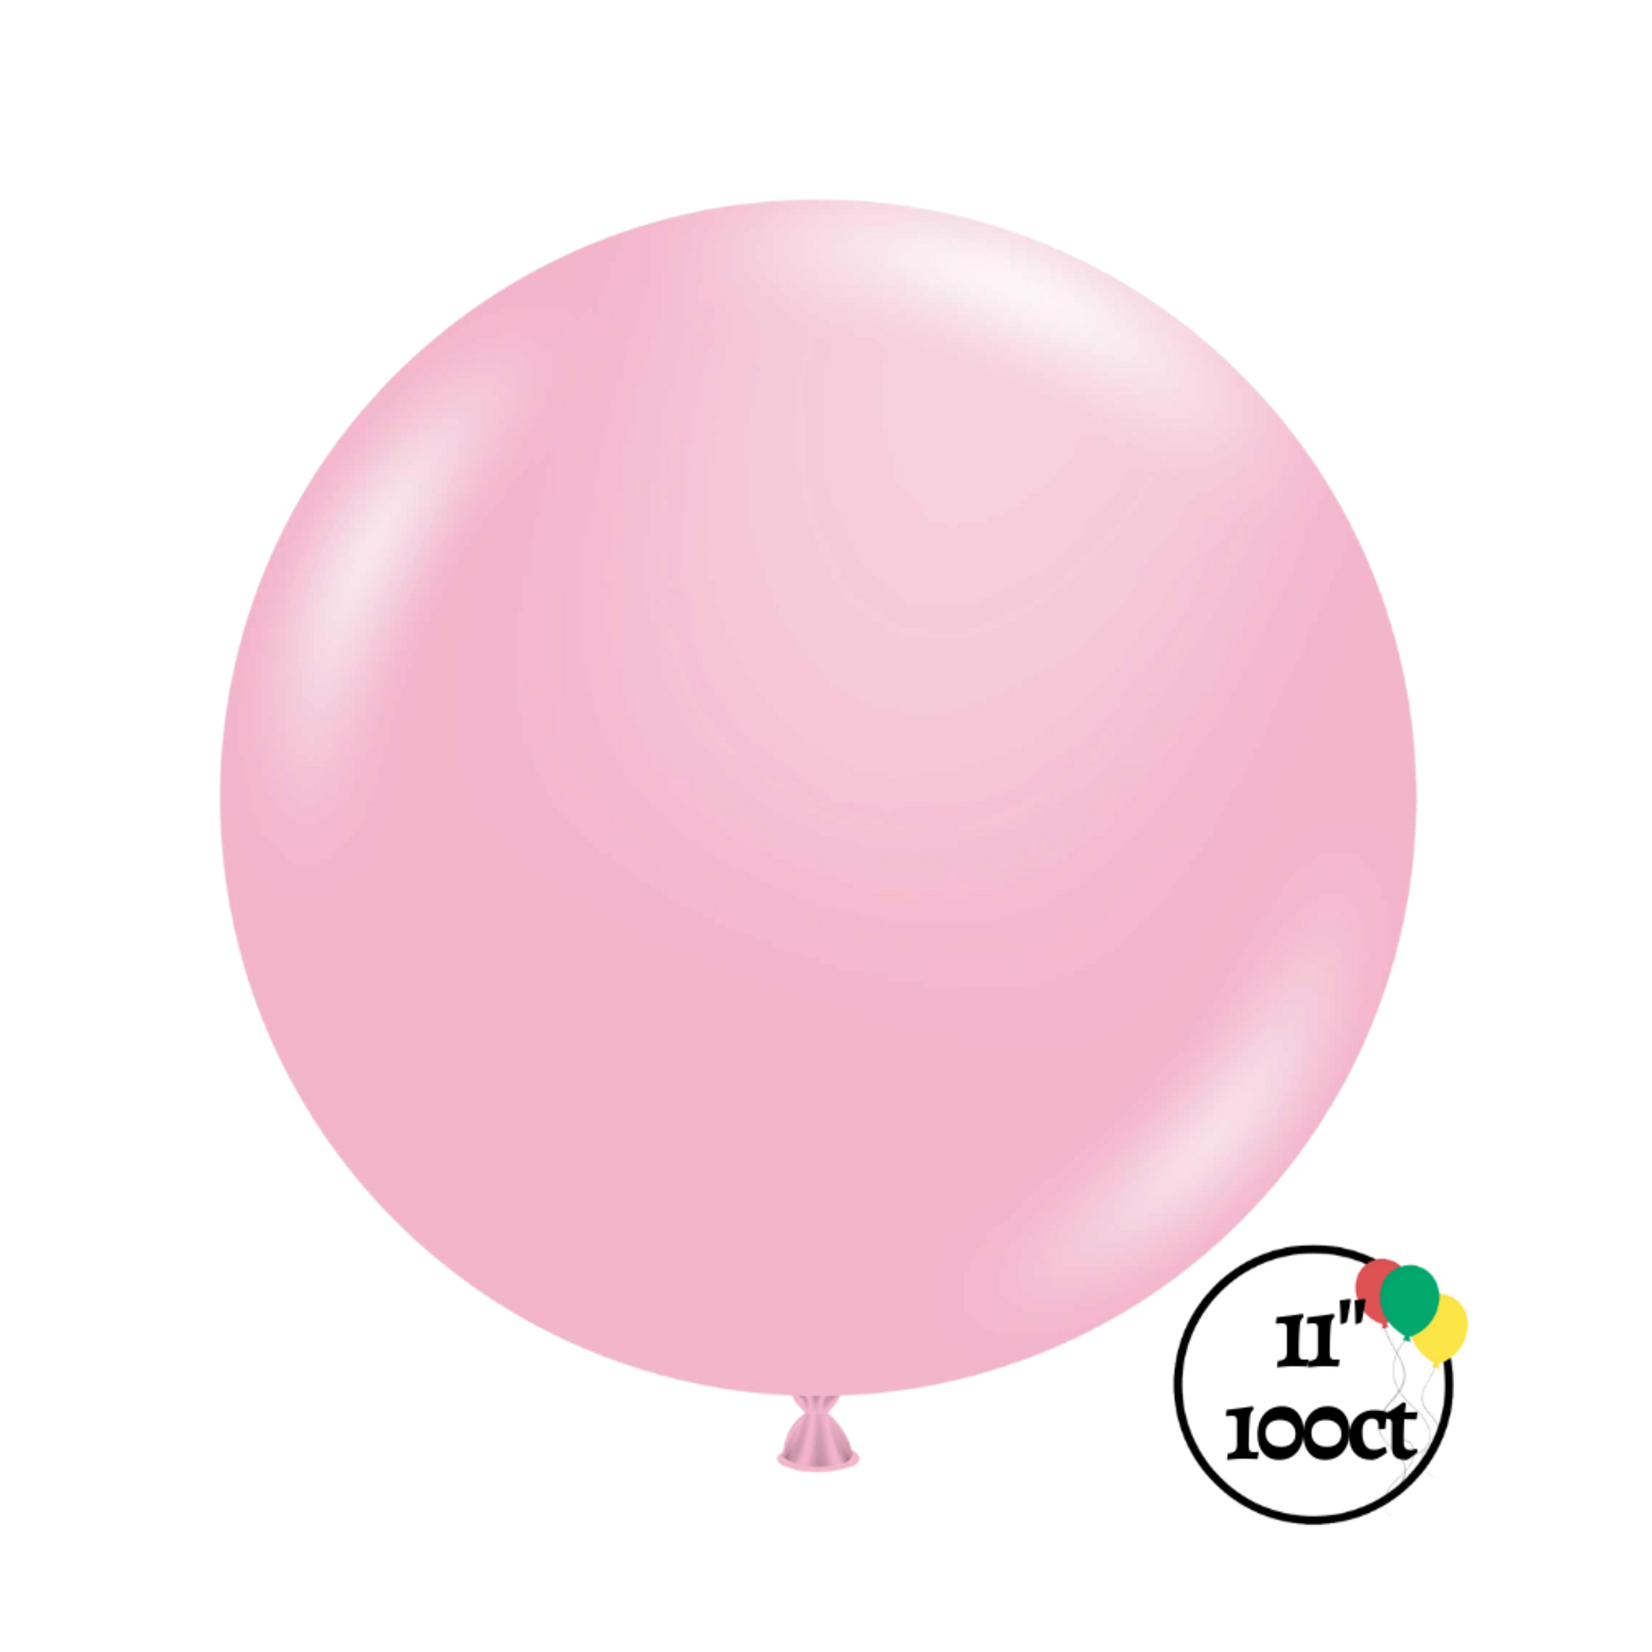 Tuftex 11" Tuftex Baby Pink 100ct Balloon